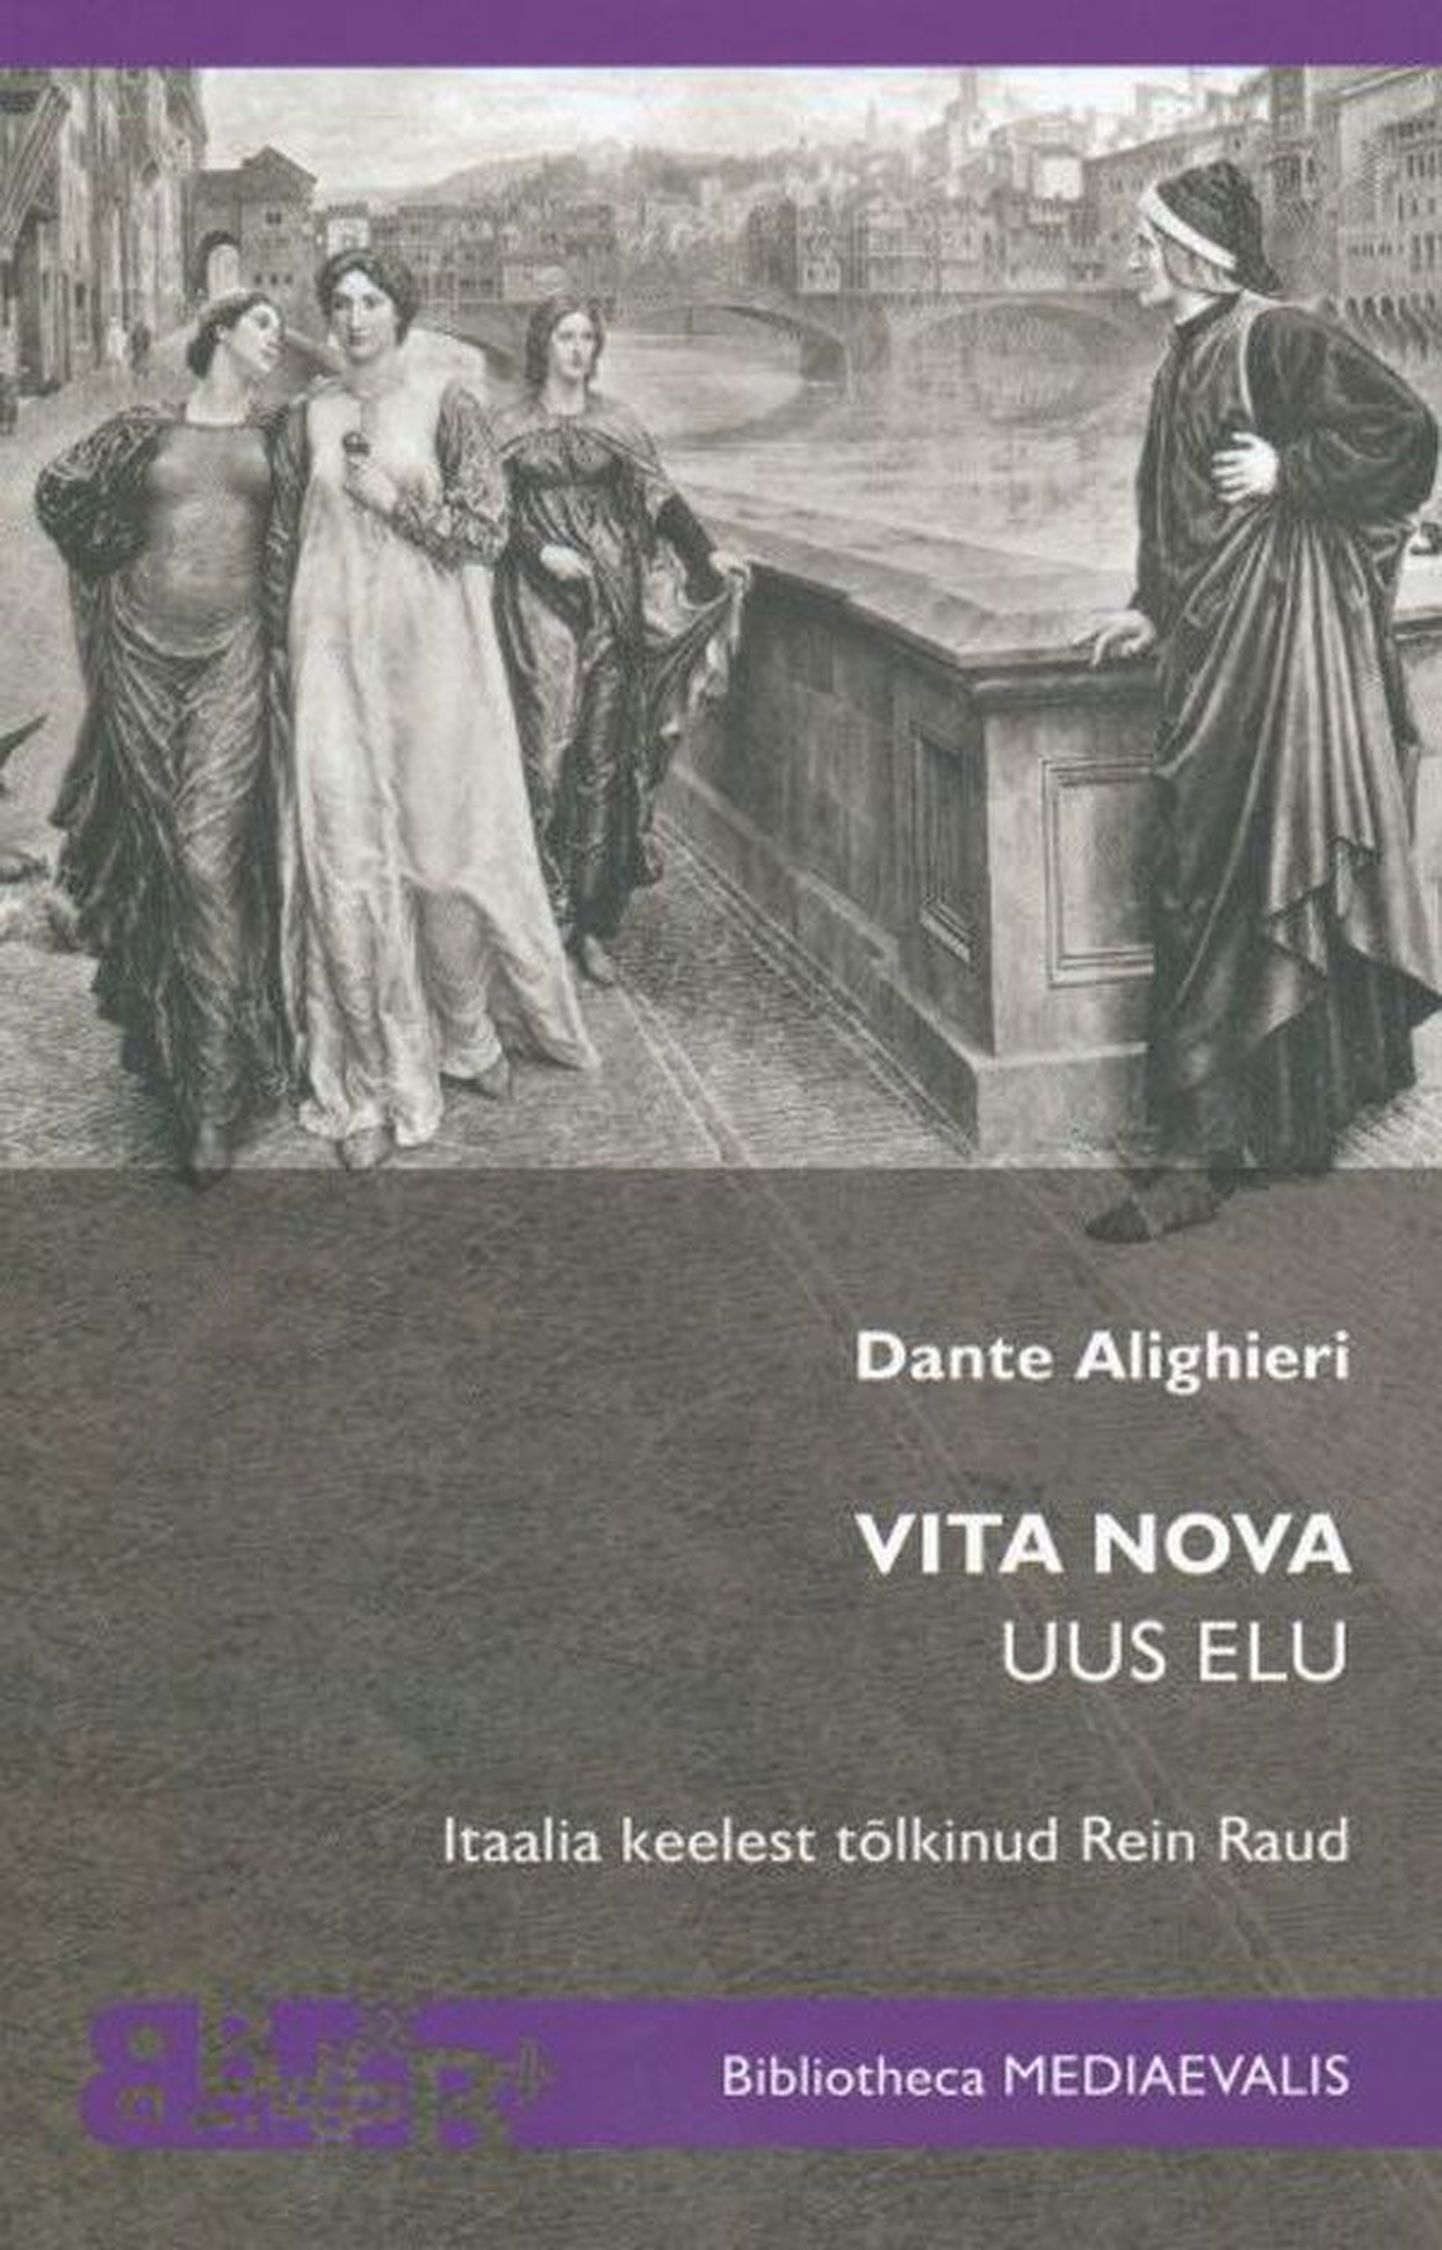 Raamat
Dante Aligheri
«Vita nova – Uus elu»
Tõlkinud ja kommenteerinud 
Rein Raud. 
Tallinna Ülikooli Kirjastus, 2012